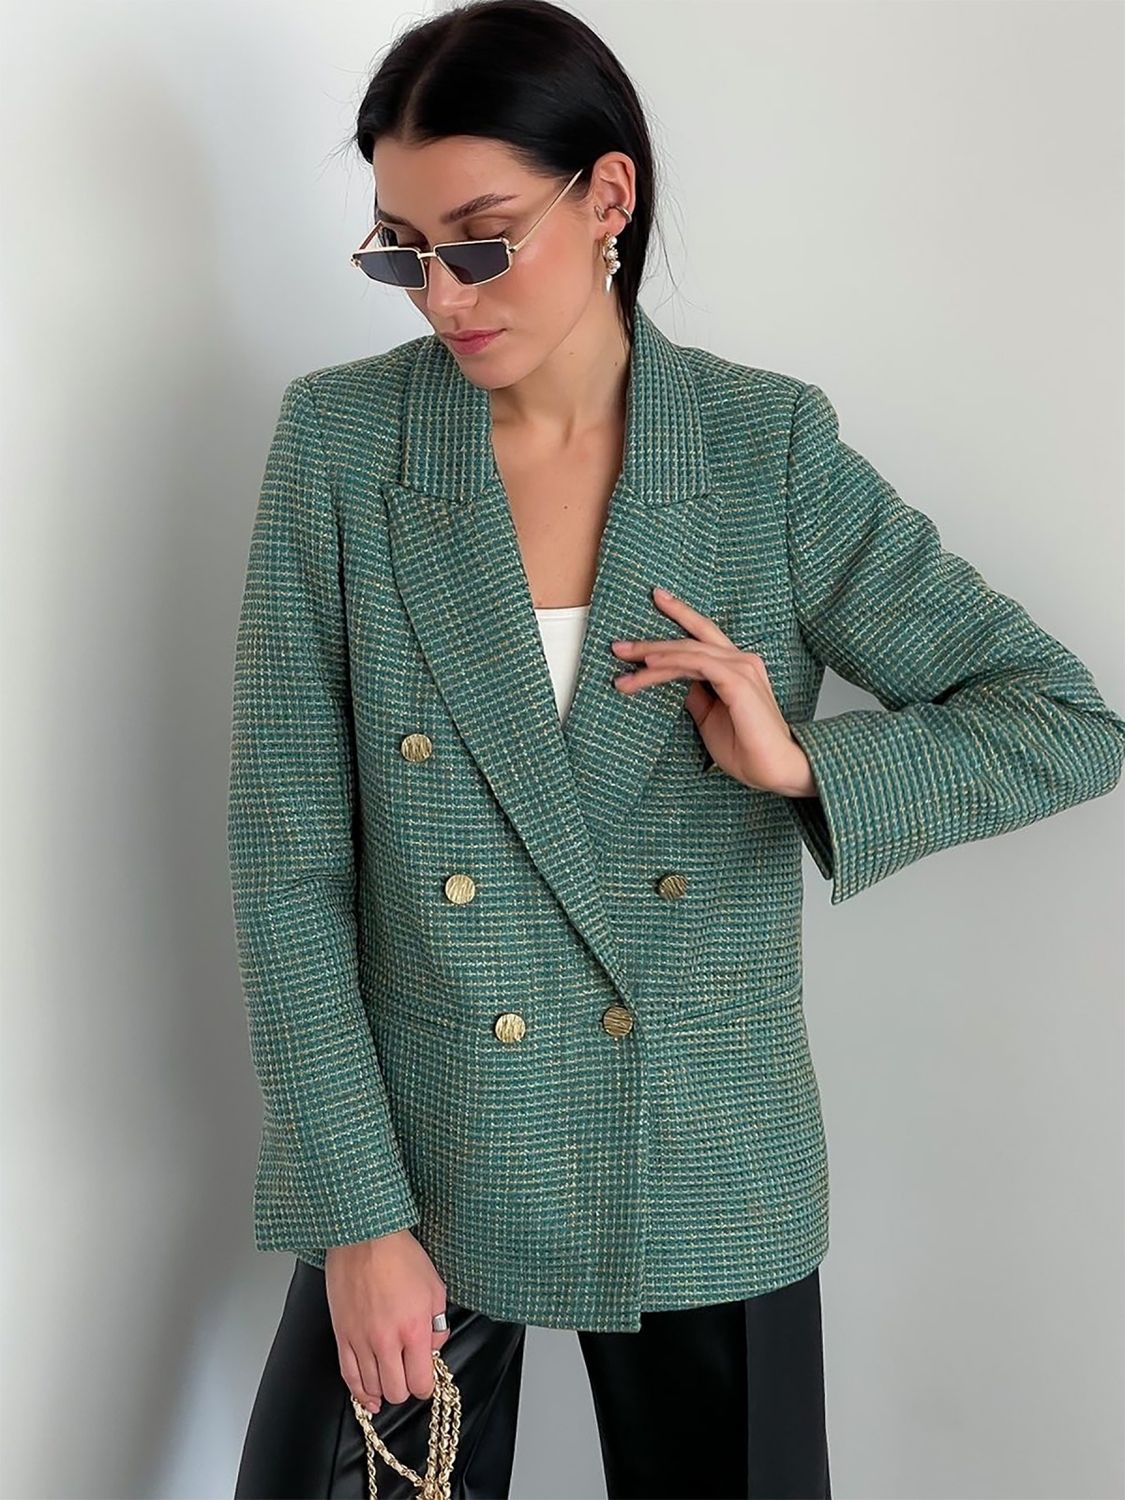 Женский твидовый пиджак зеленого цвета - фото